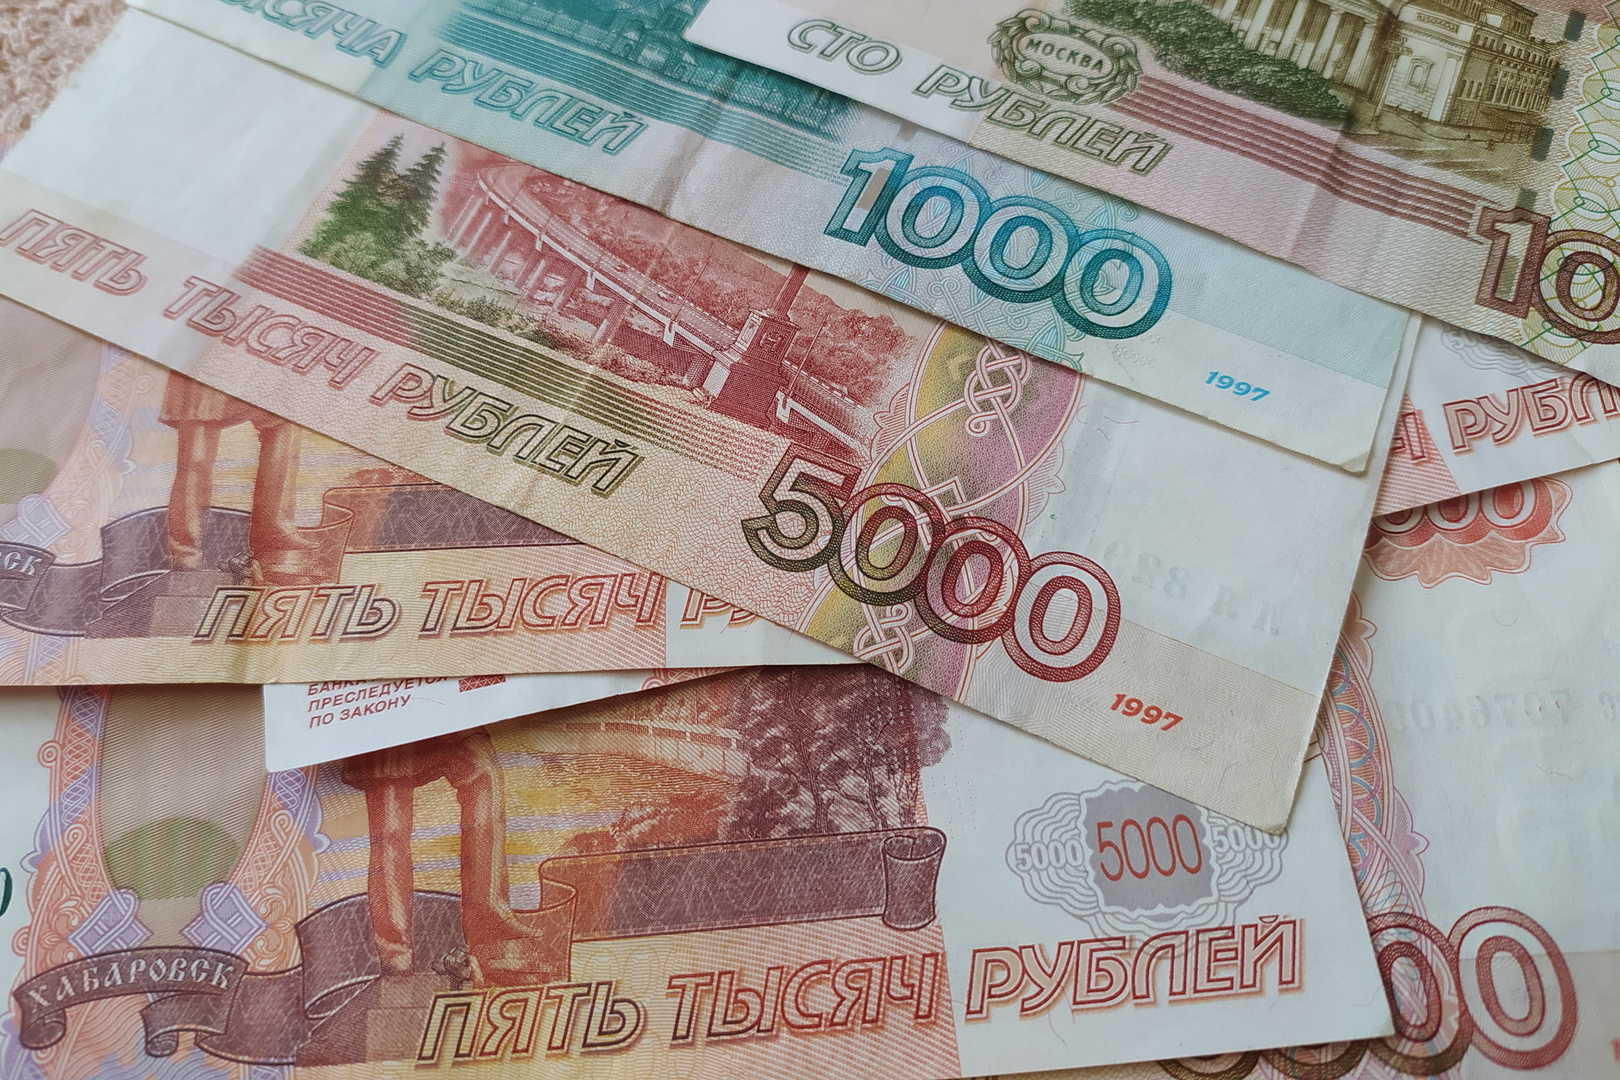 المالية الروسية تطرح عملات أجنبية في سوق عملات المحلية